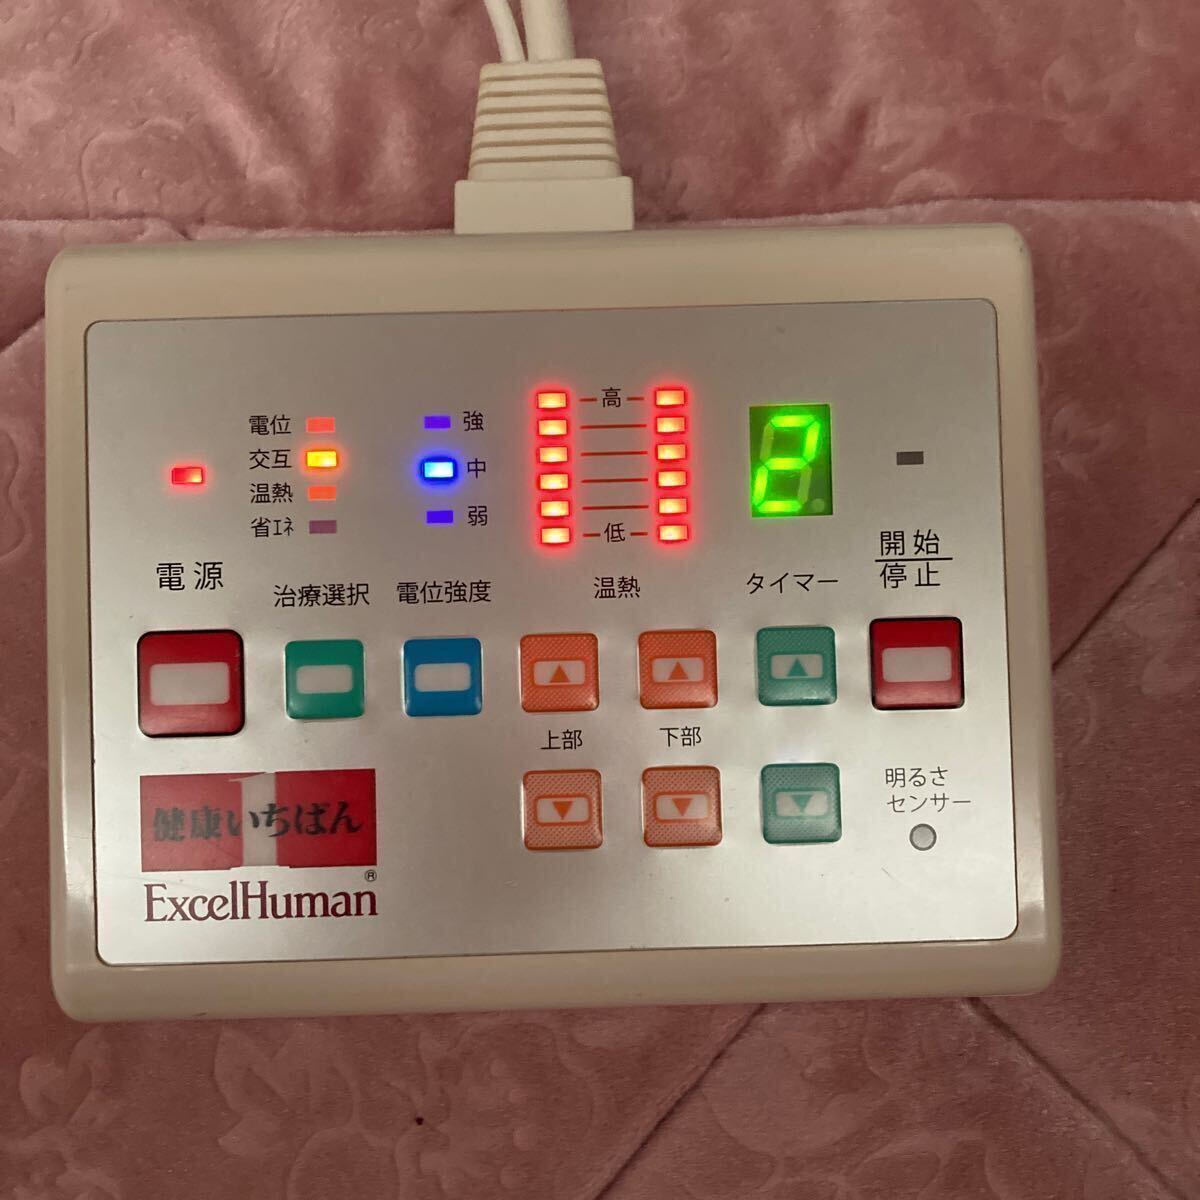 Excel Human/エクセルヒューマン EH-100 健康いちばん 家庭用医療機器 シングル マットレス ピンク系 専用カバー ケース付の画像5